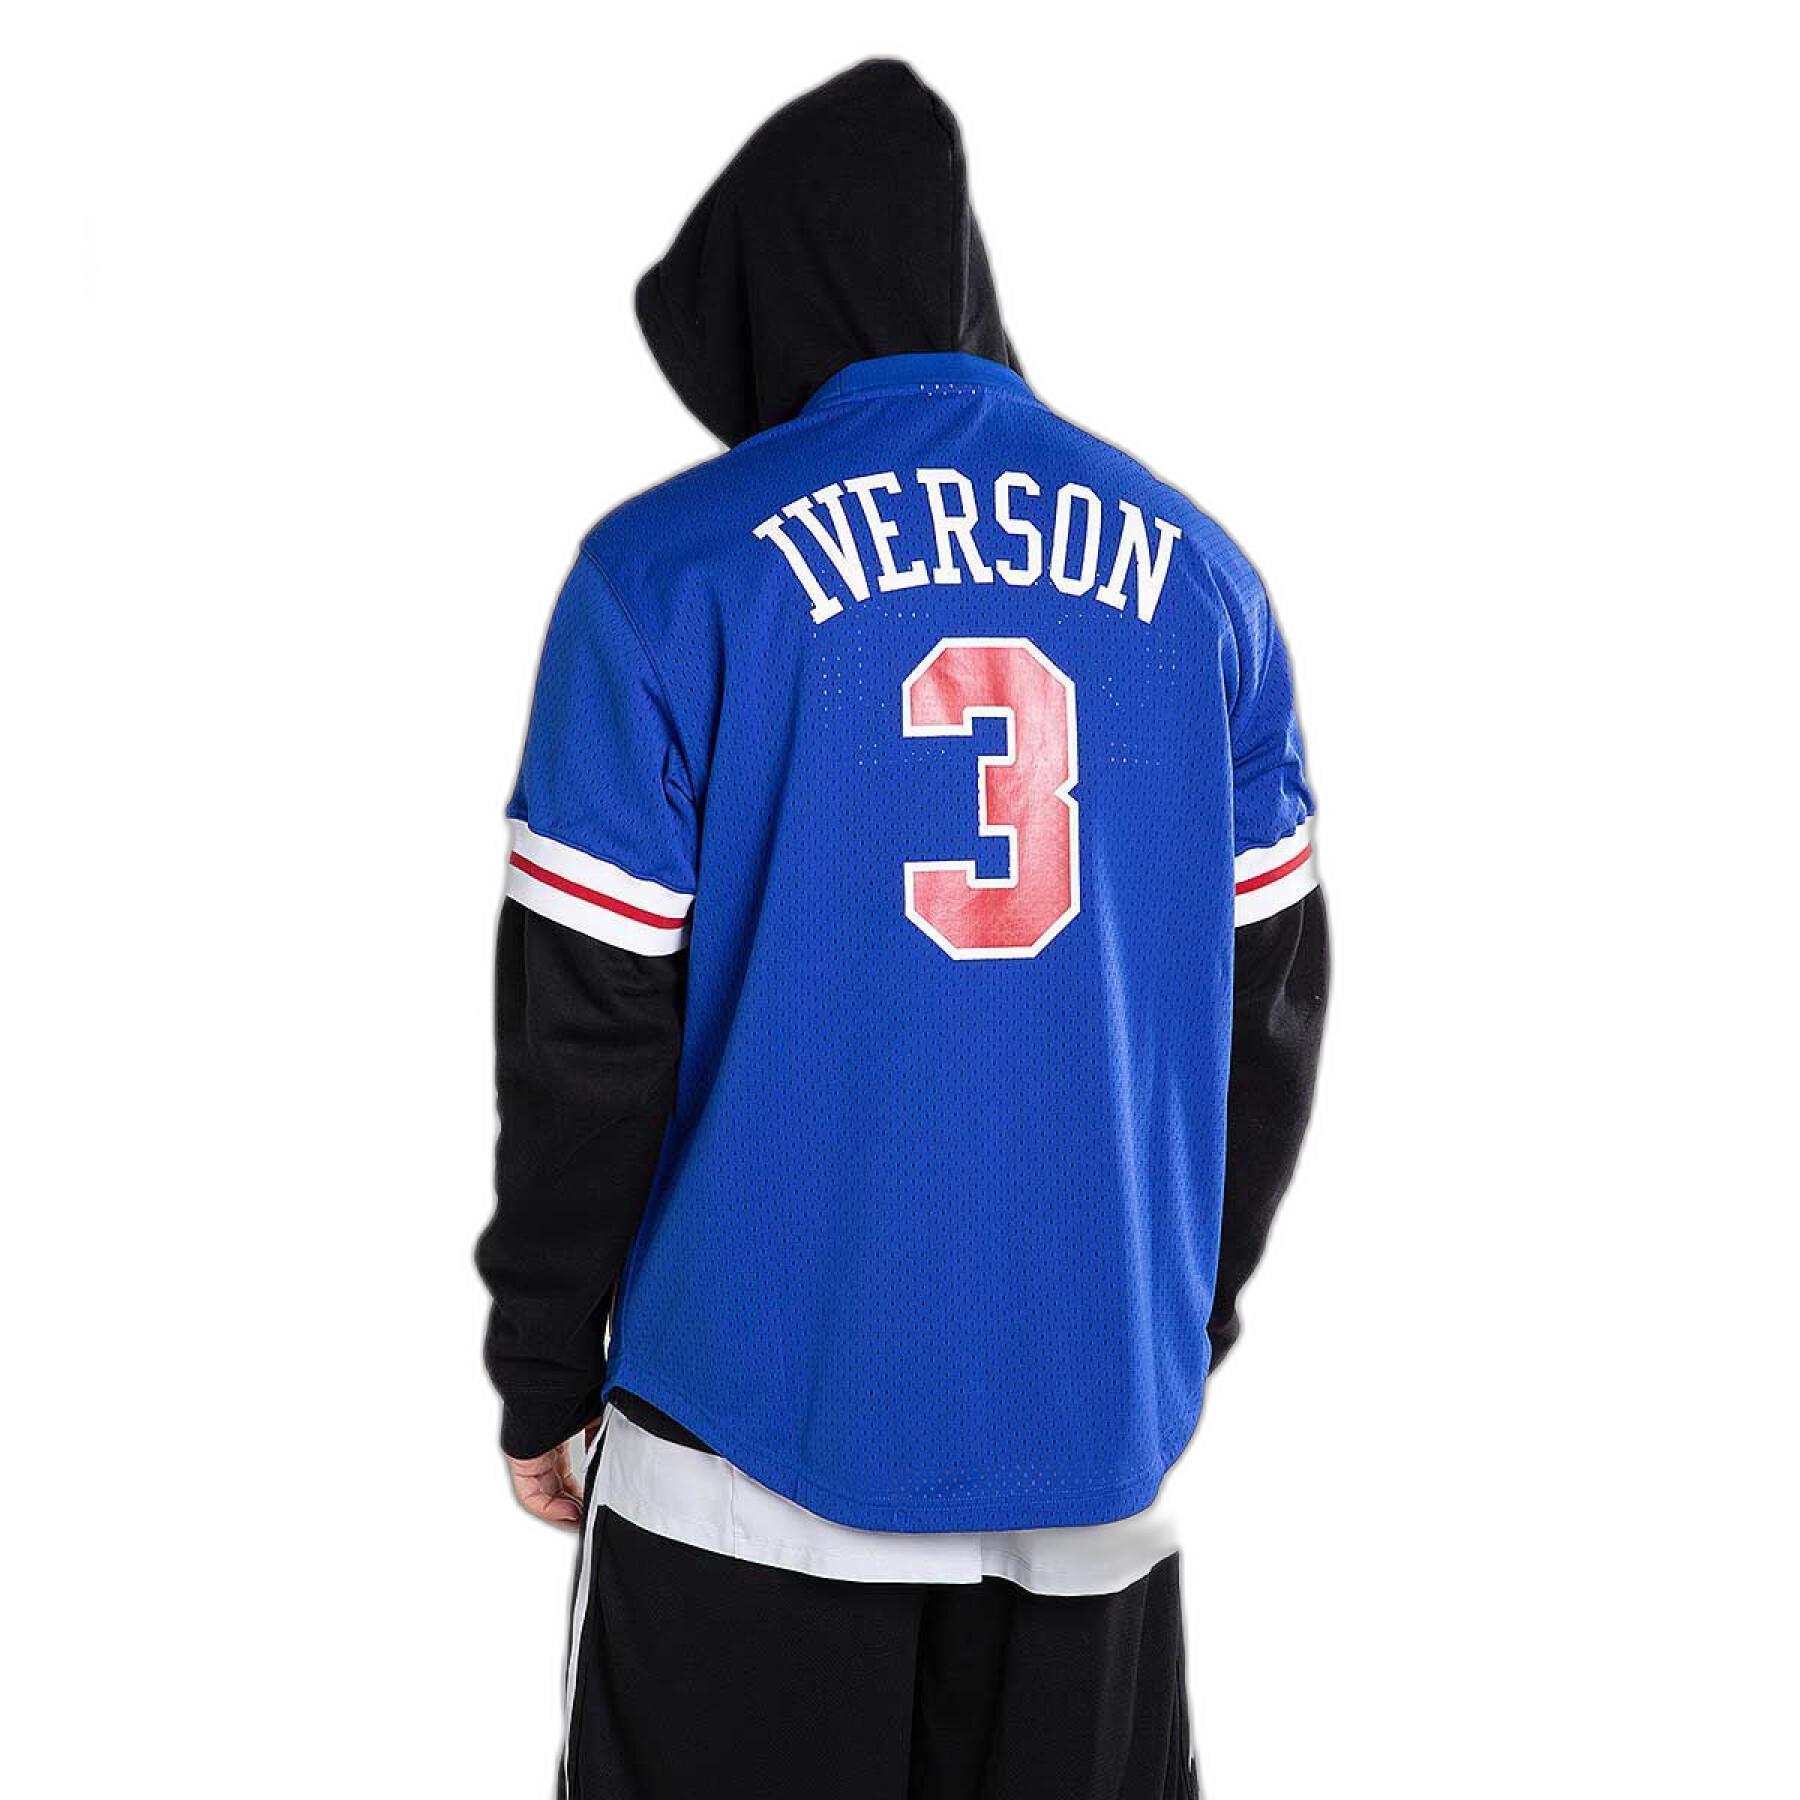 Camiseta Philadelphia 76ers Allen Iverson